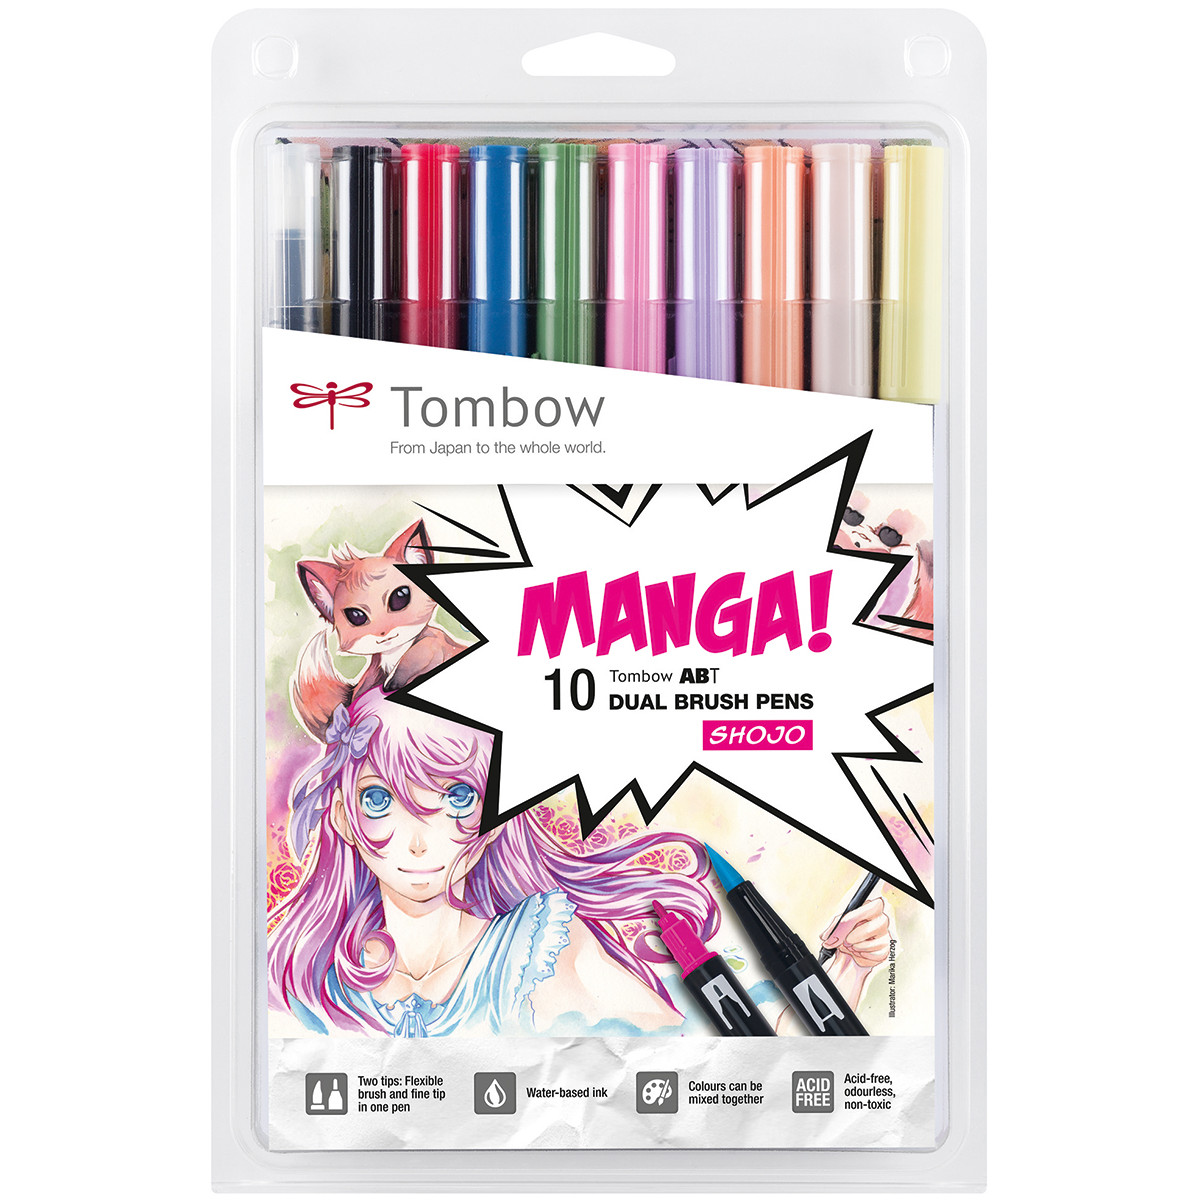 Tombow ABT Dual Brush Pens - Manga Shojo Colours (Pack of 10)